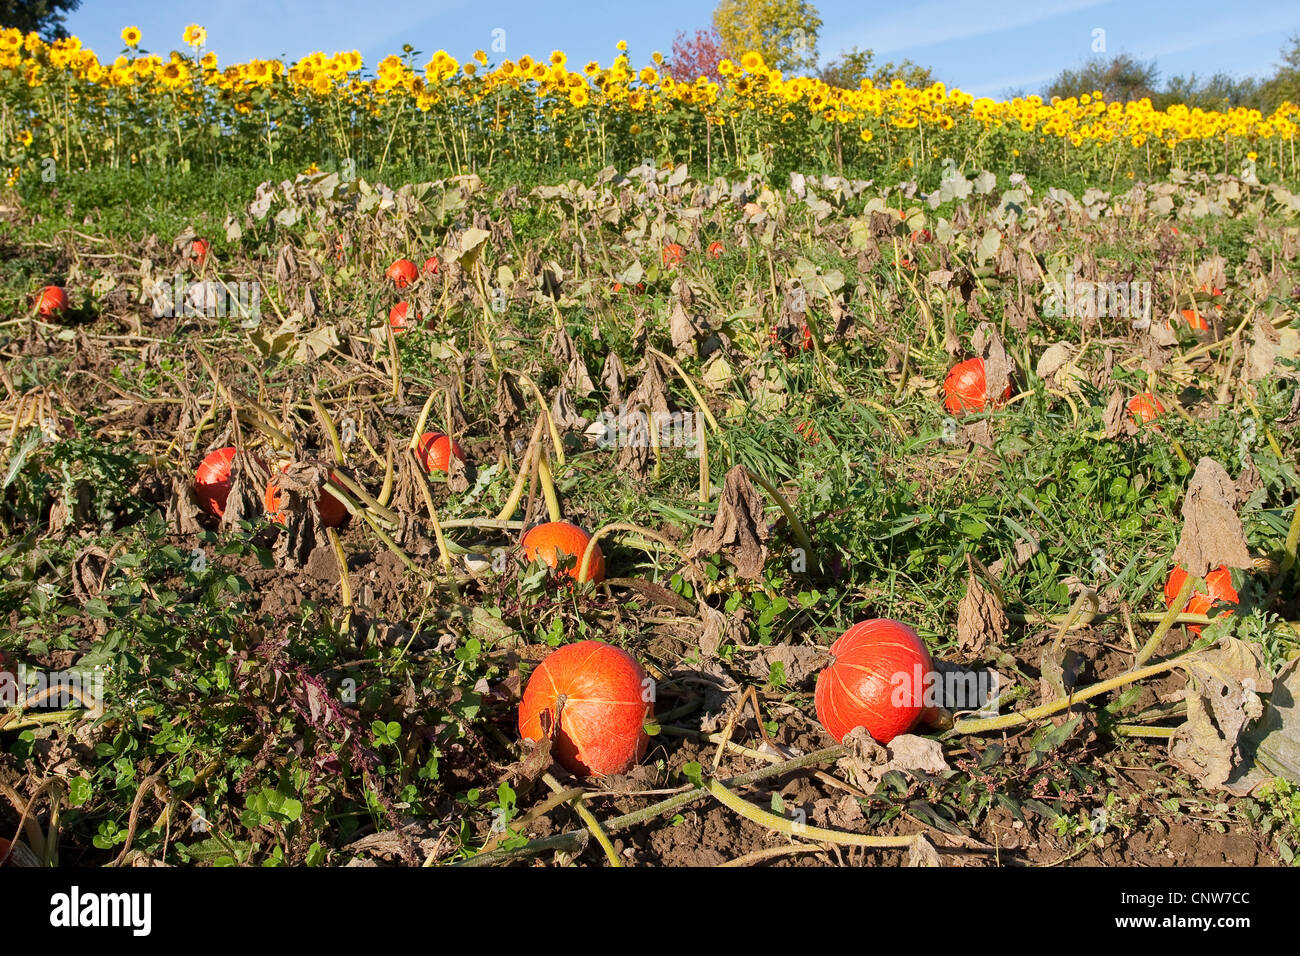 marrow, field pumpkin (Cucurbita maxima), ripe Hokkaido on the field, Germany Stock Photo